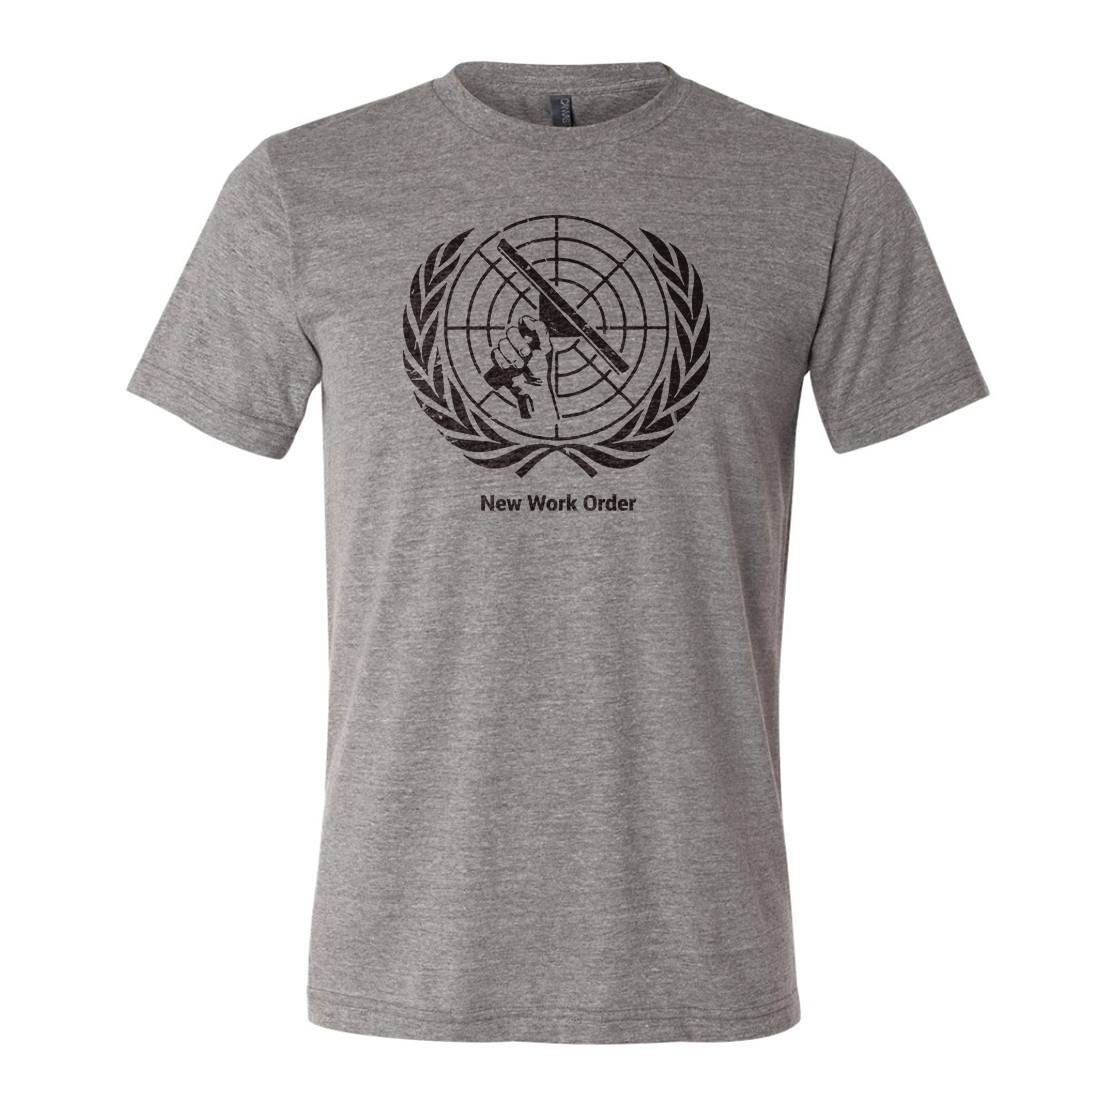 Chris T. Wilson T-Shirt - New Work Order - Full View